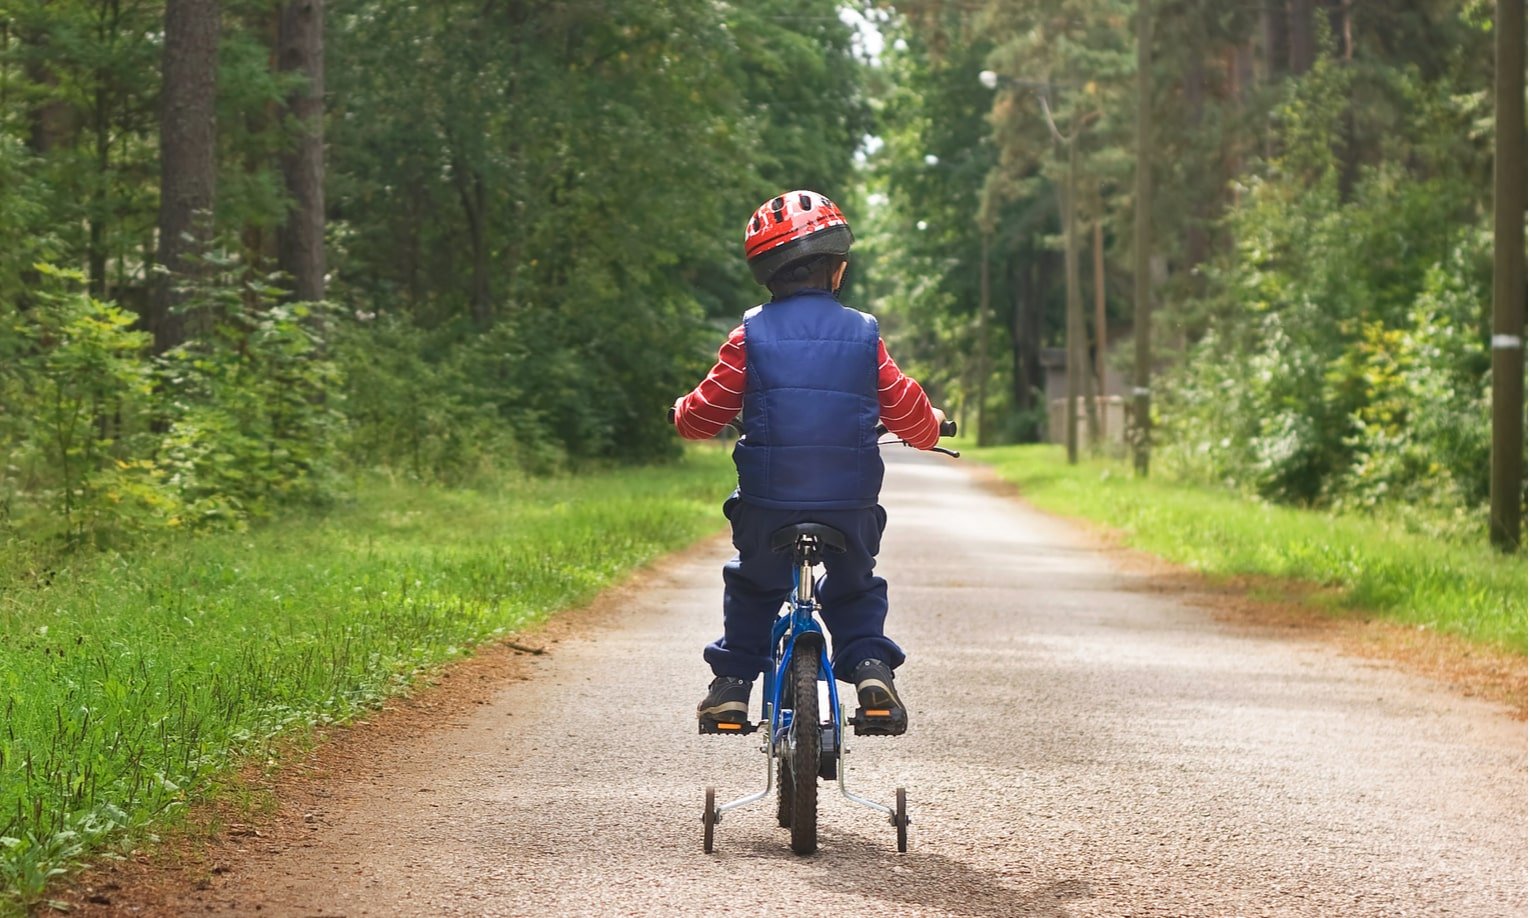 poiss sõidab metsas jalgrattaga